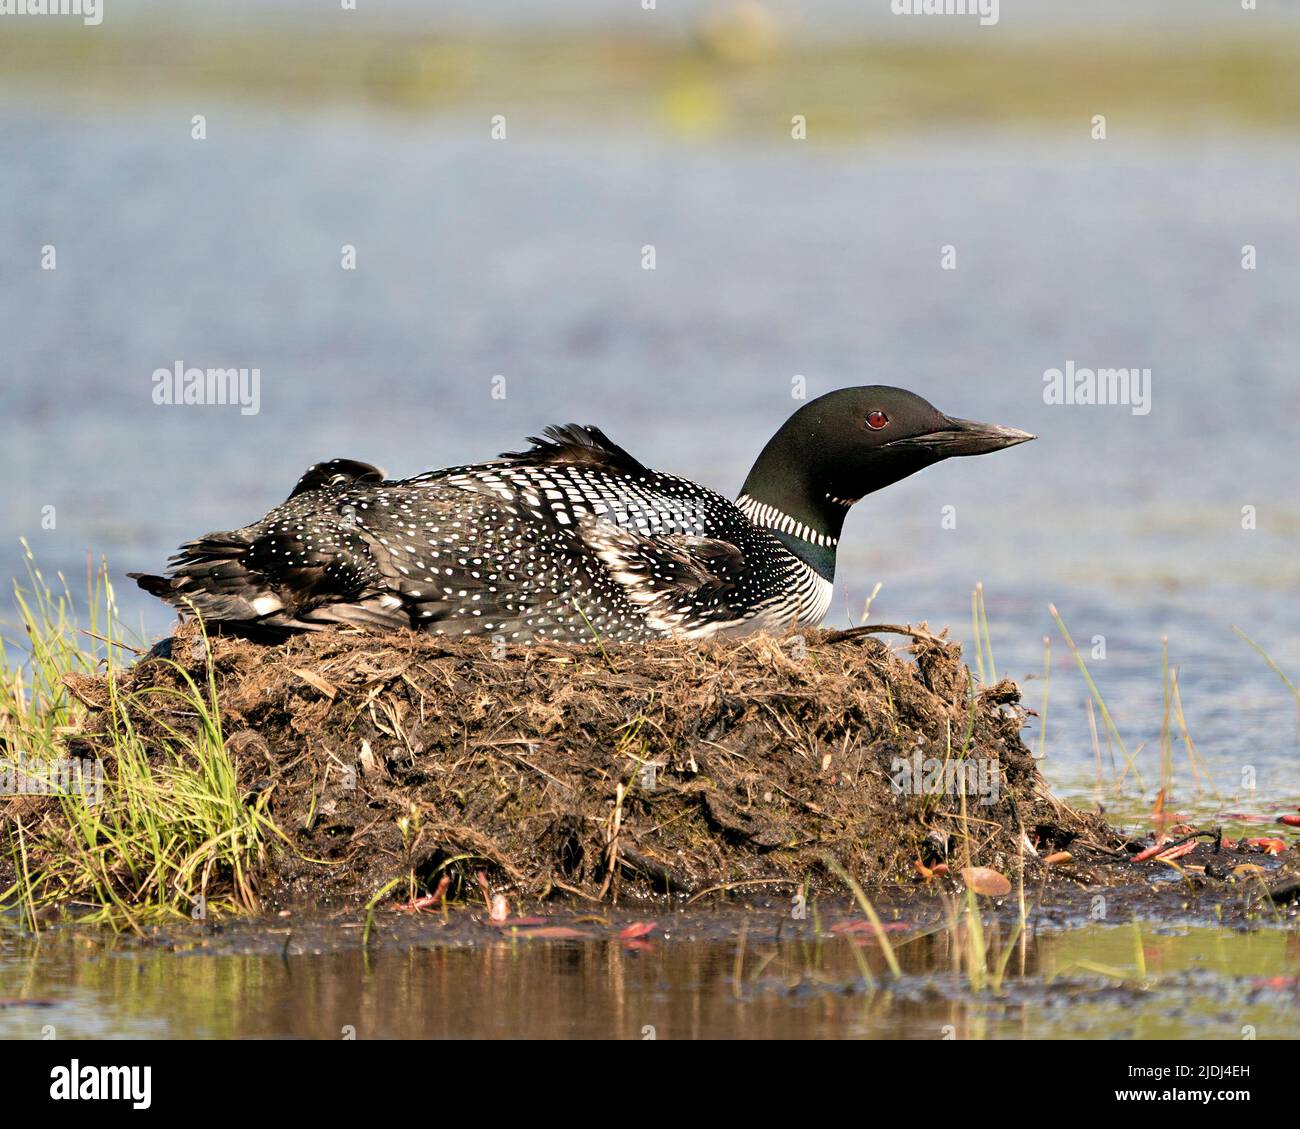 Loon comune nidificare e proteggere il nido presso la riva del lago nel suo ambiente e habitat con uno sfondo sfocato. Loon Foto e immagine. Immagine. Foto Stock